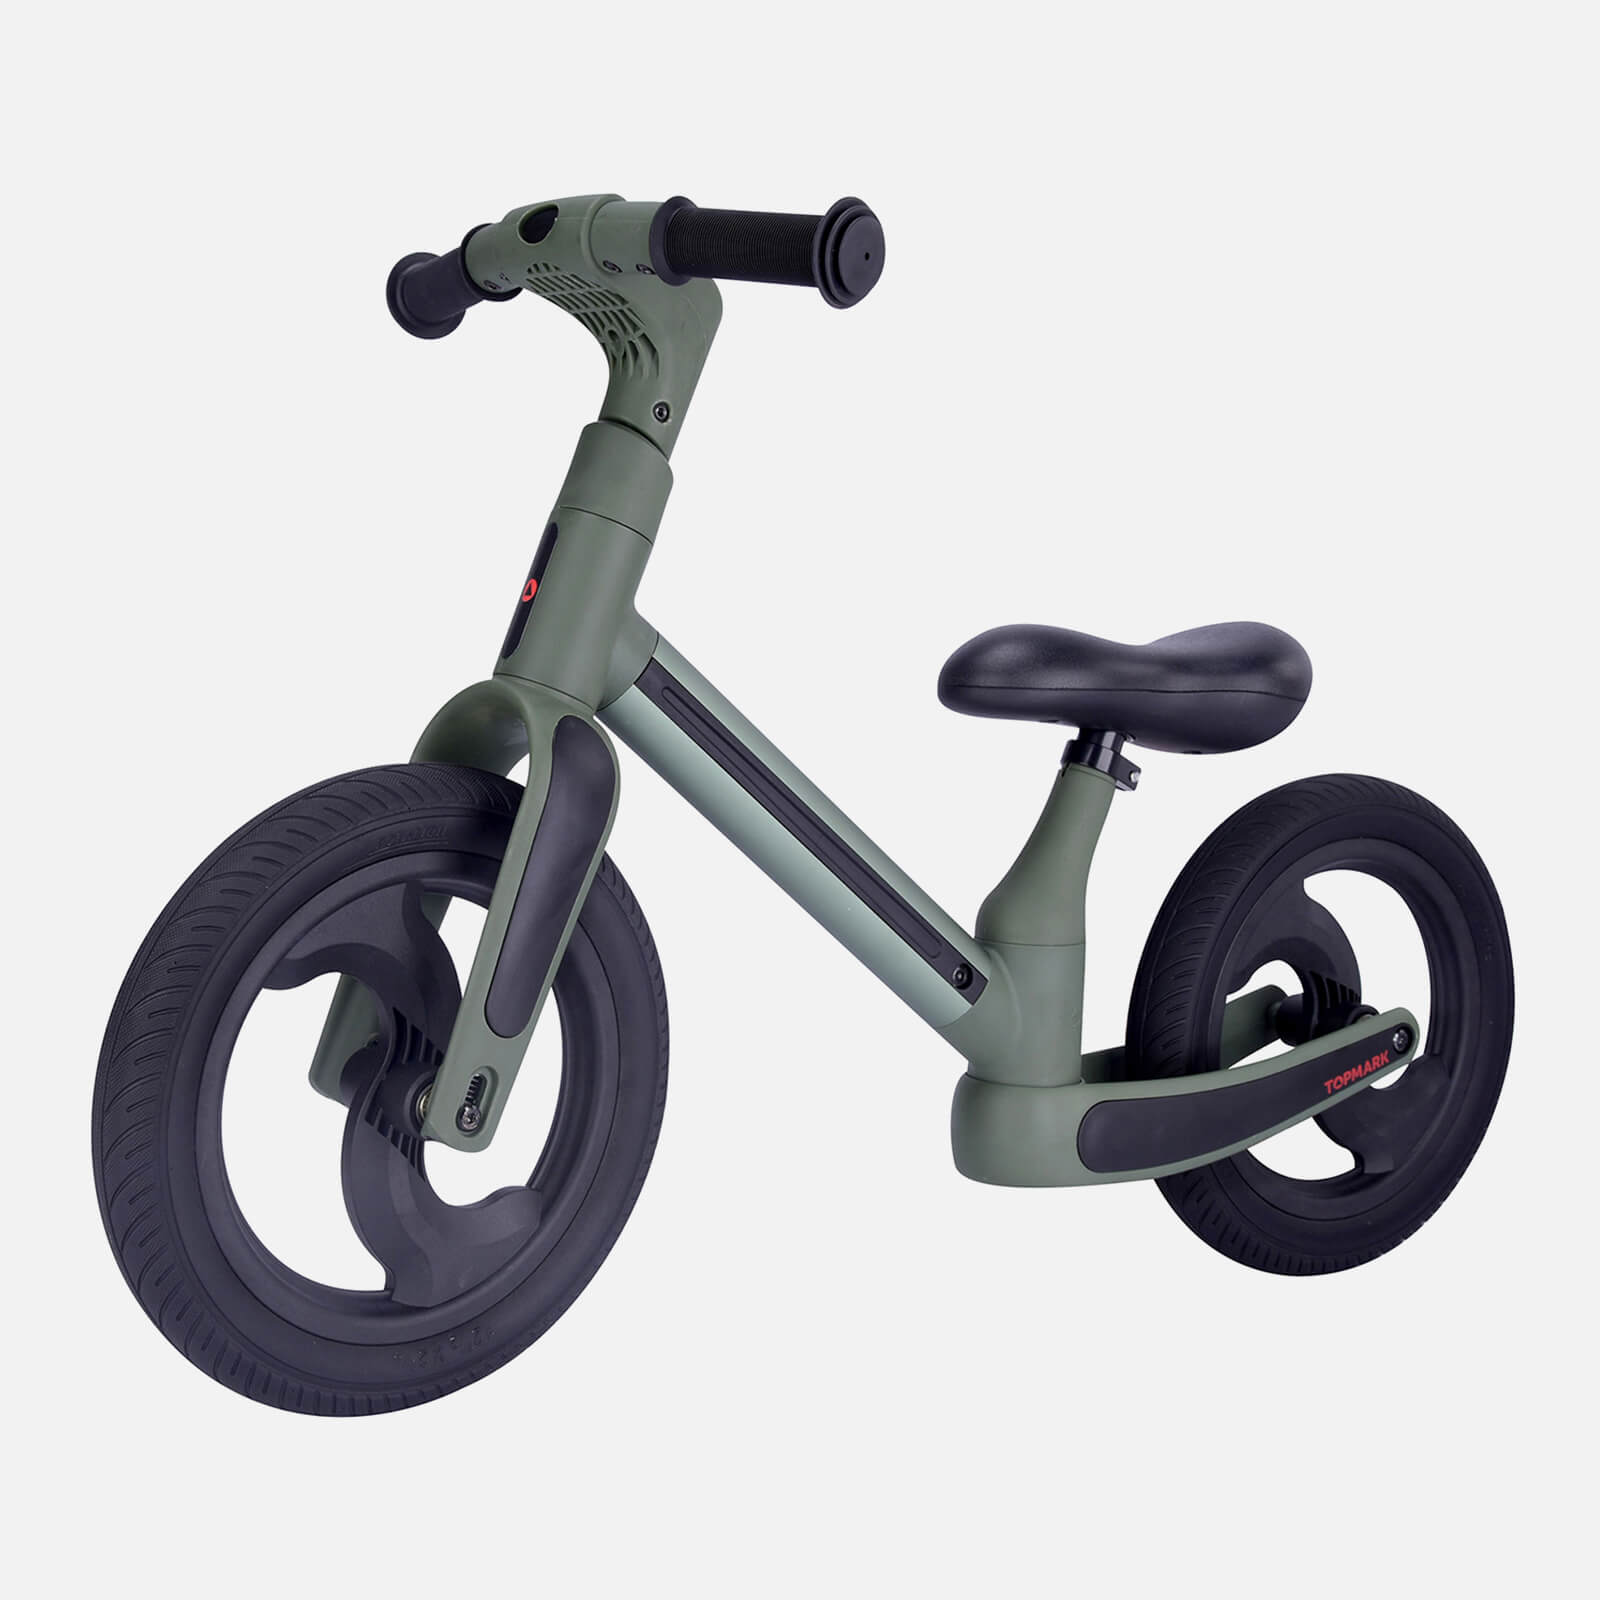 Top Mark Foldable Balance Bike - Green